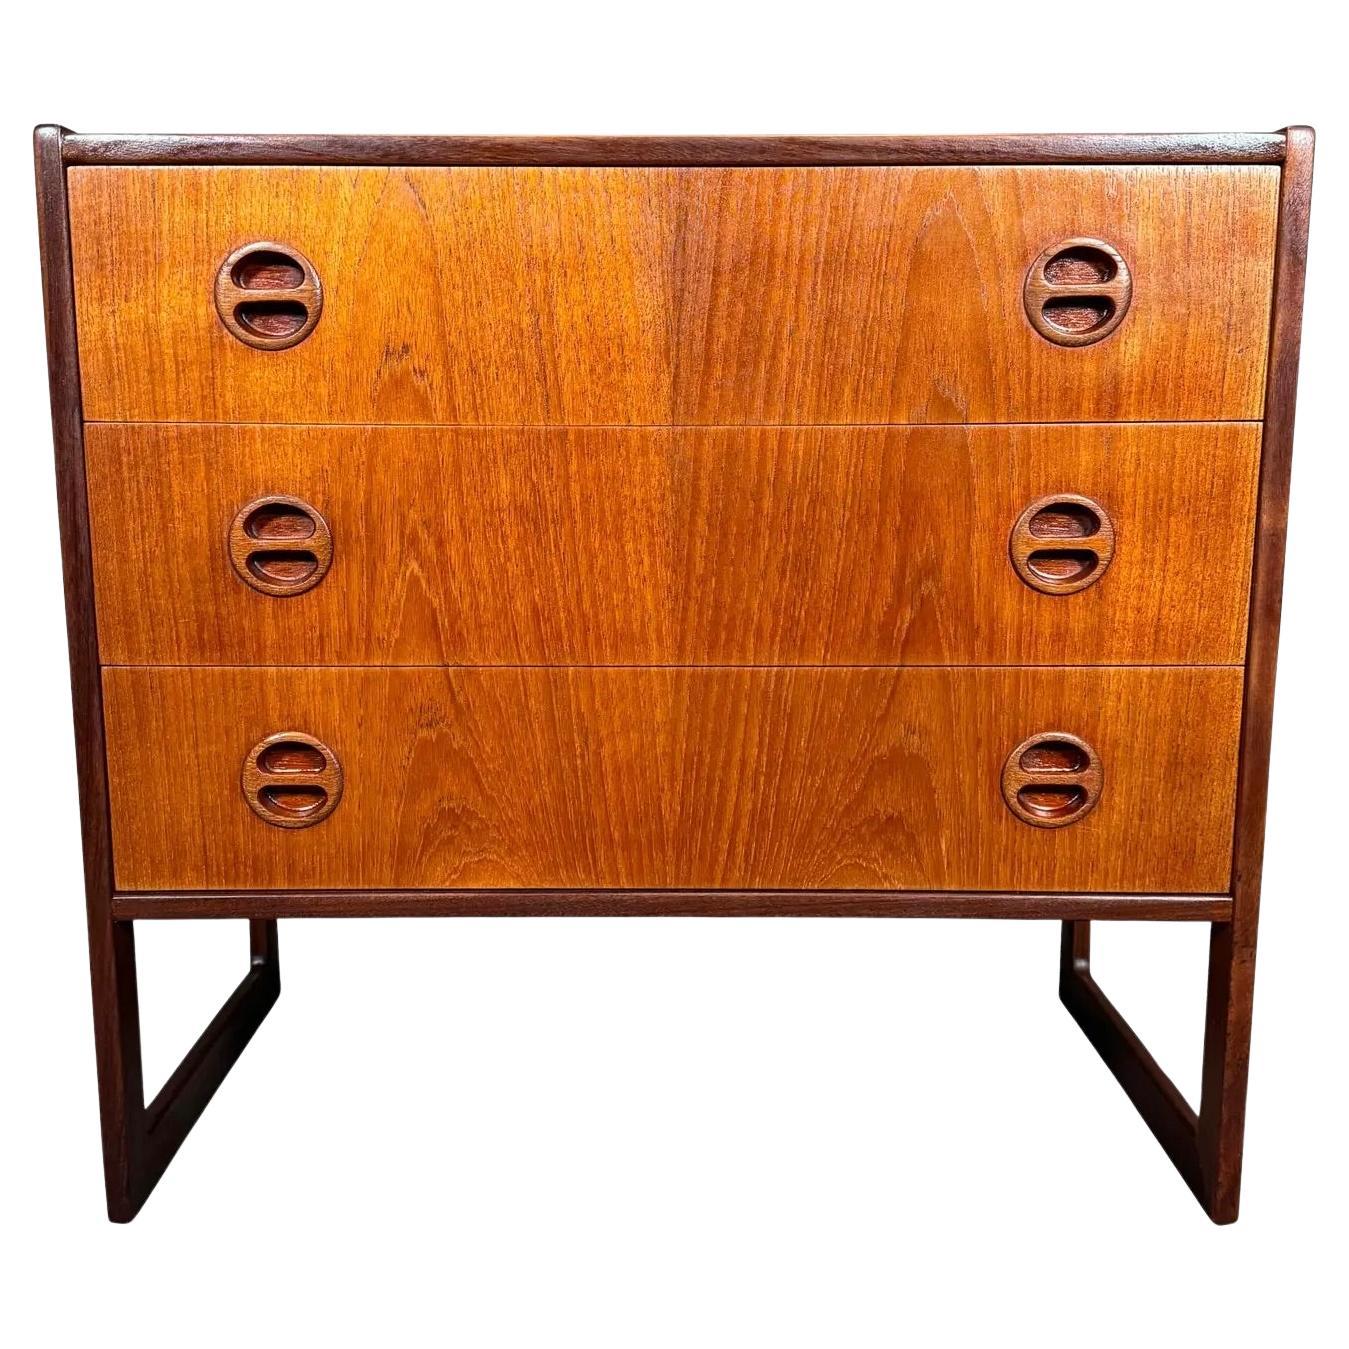 Vintage Danish Mid Century Modern Teak LowBoy Dresser Chest by Arne Wahl Iversen